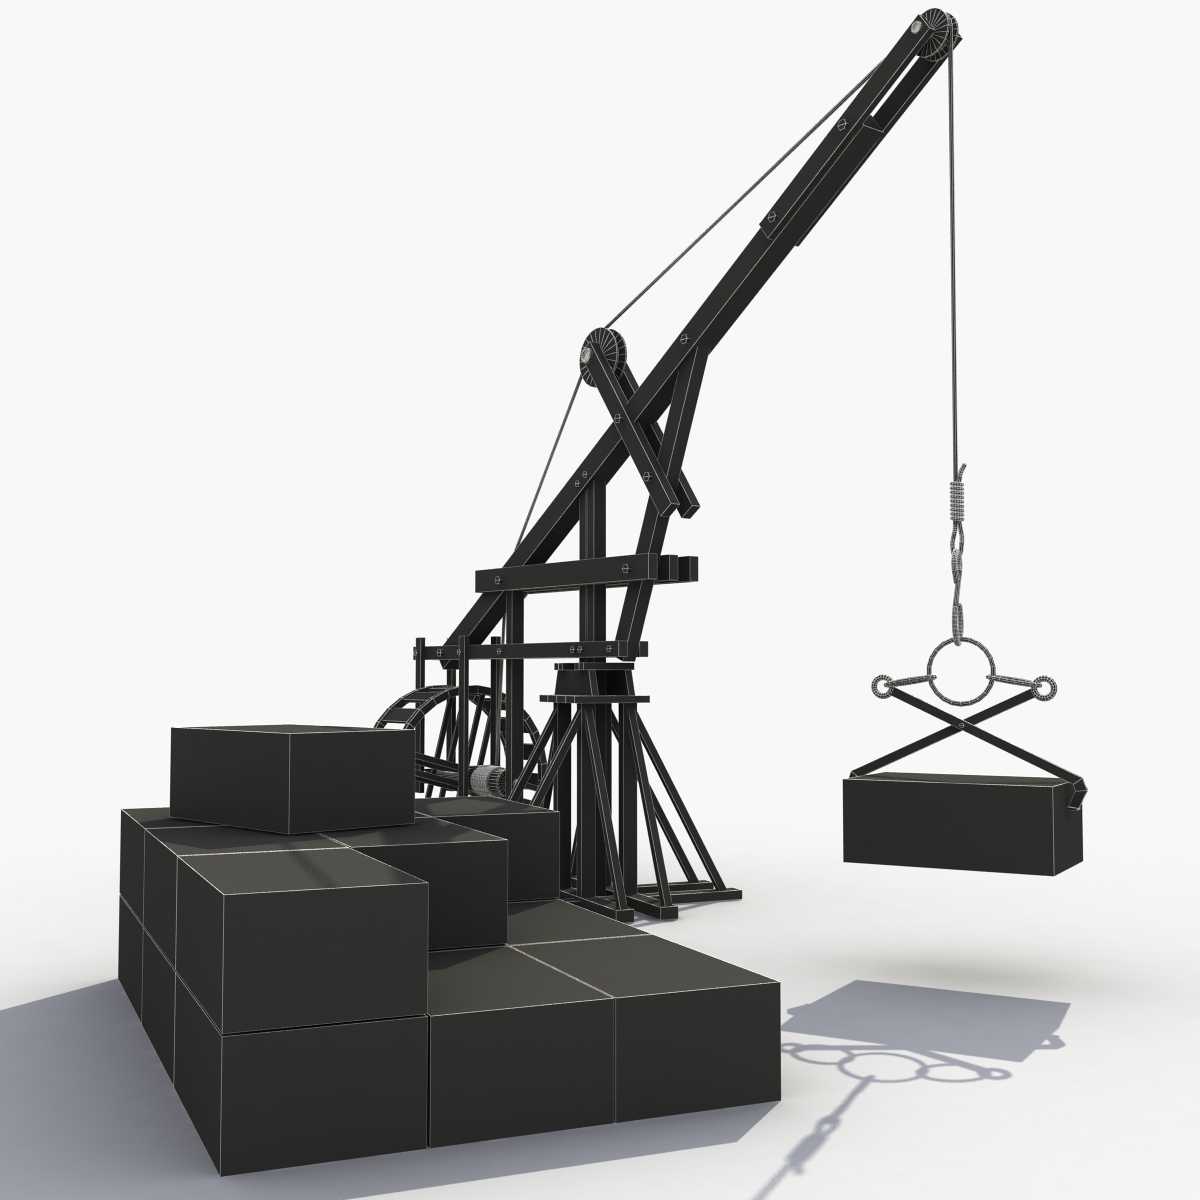 3D model wooden crane